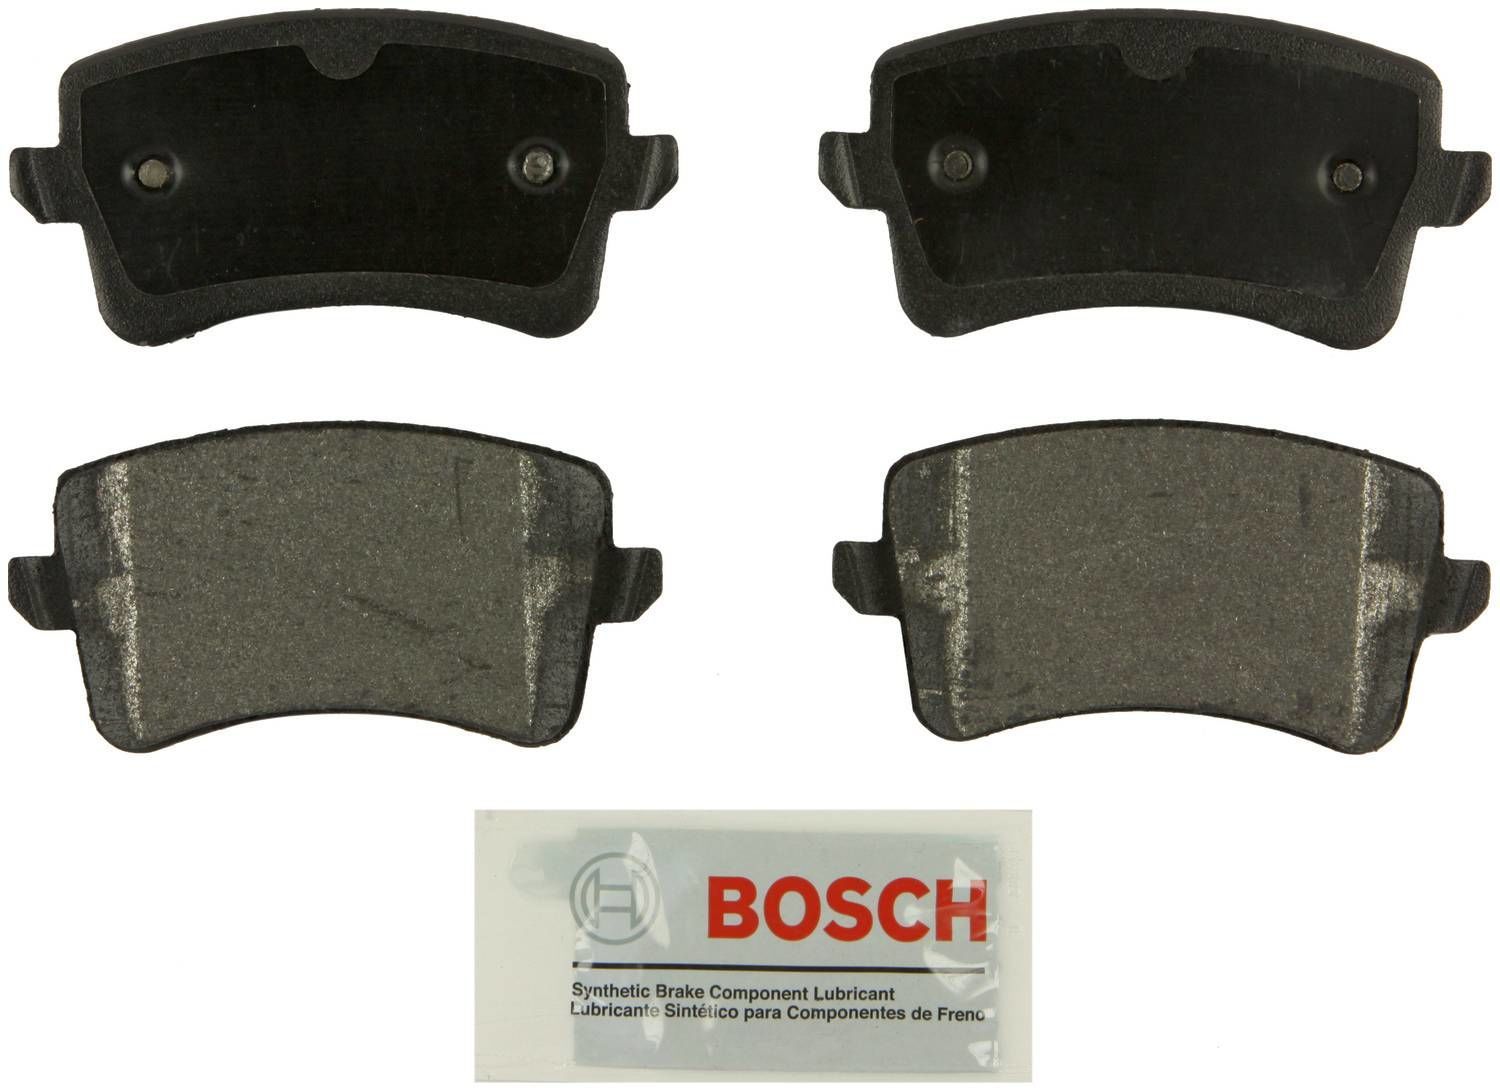 BOSCH BRAKE - Bosch Blue Semi-Metallic Brake Pads - BQC BE1386